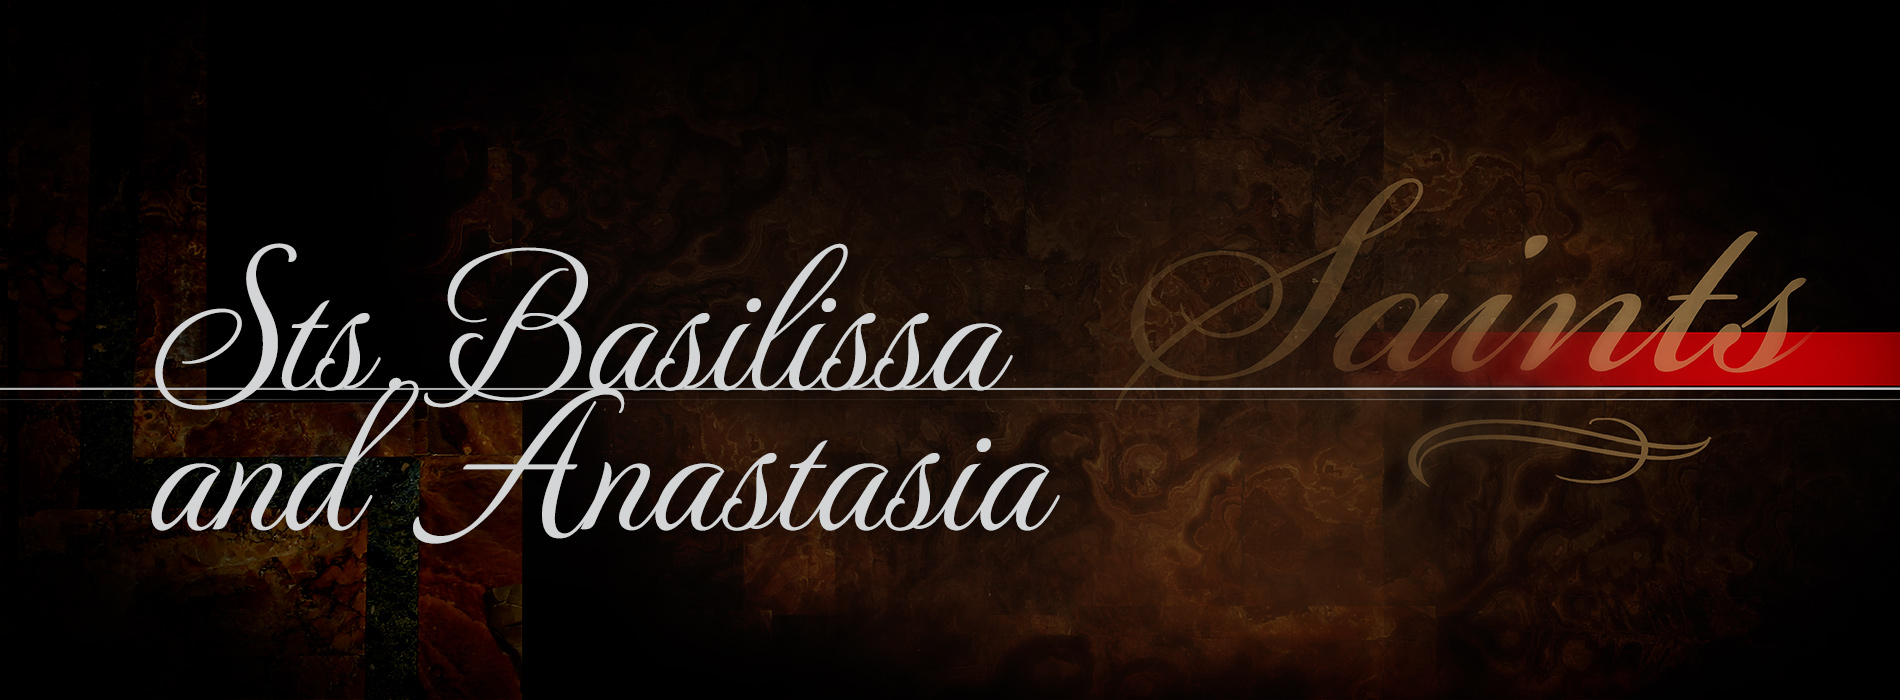 Sts. Basilissa and Anastasia